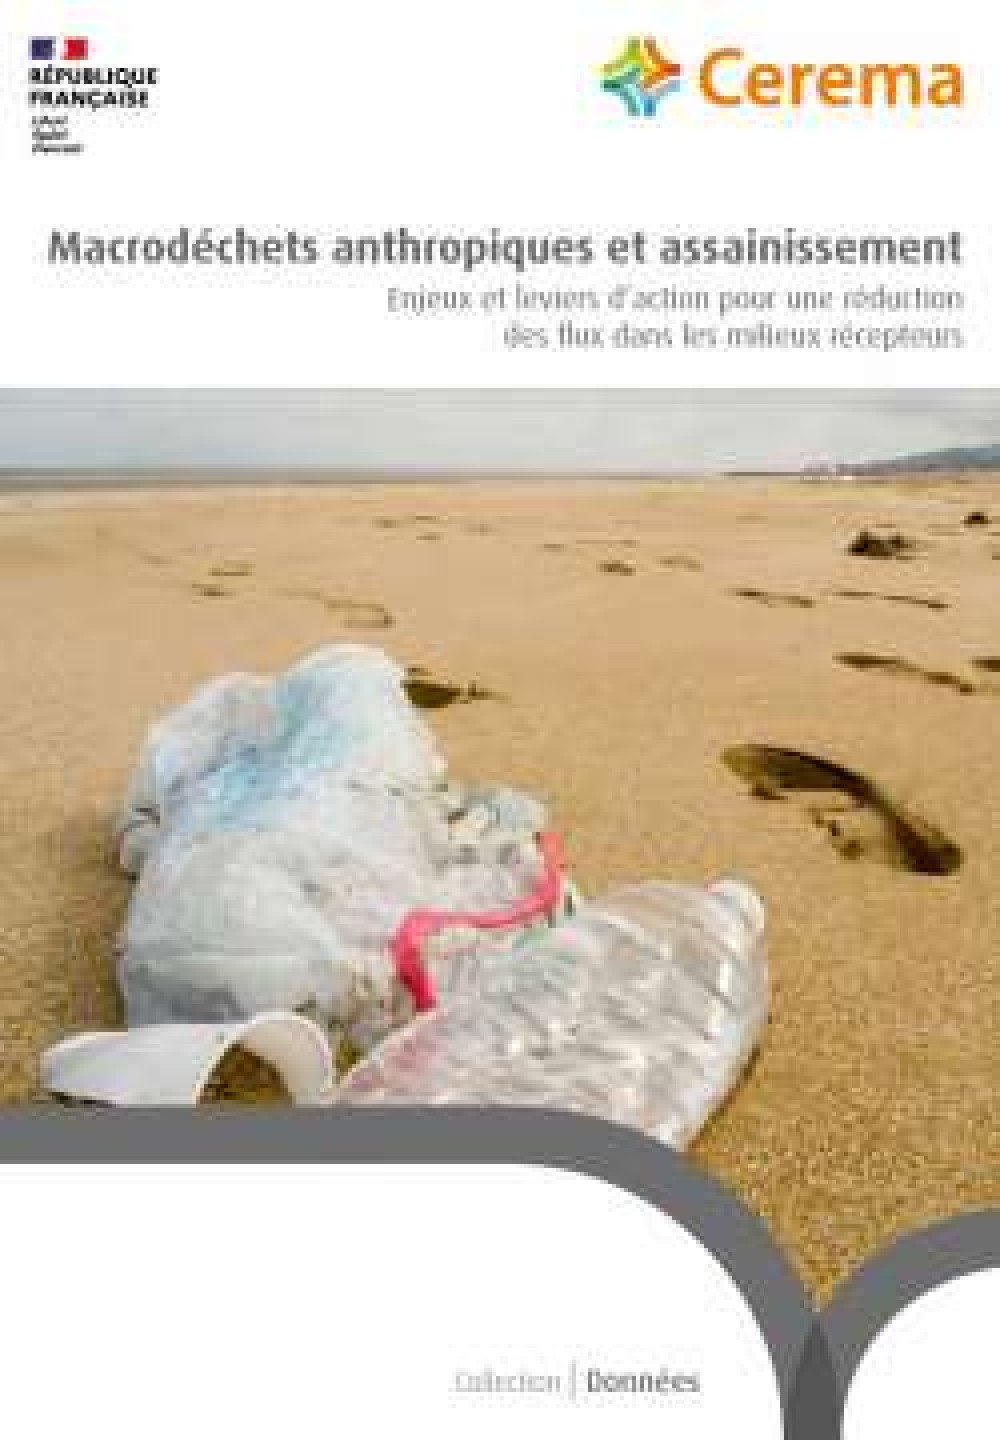 [Publication] Macrodéchets anthropiques et assainissement : Enjeux et leviers d’action pour une réduction des flux dans les milieux récepteurs - Cerema